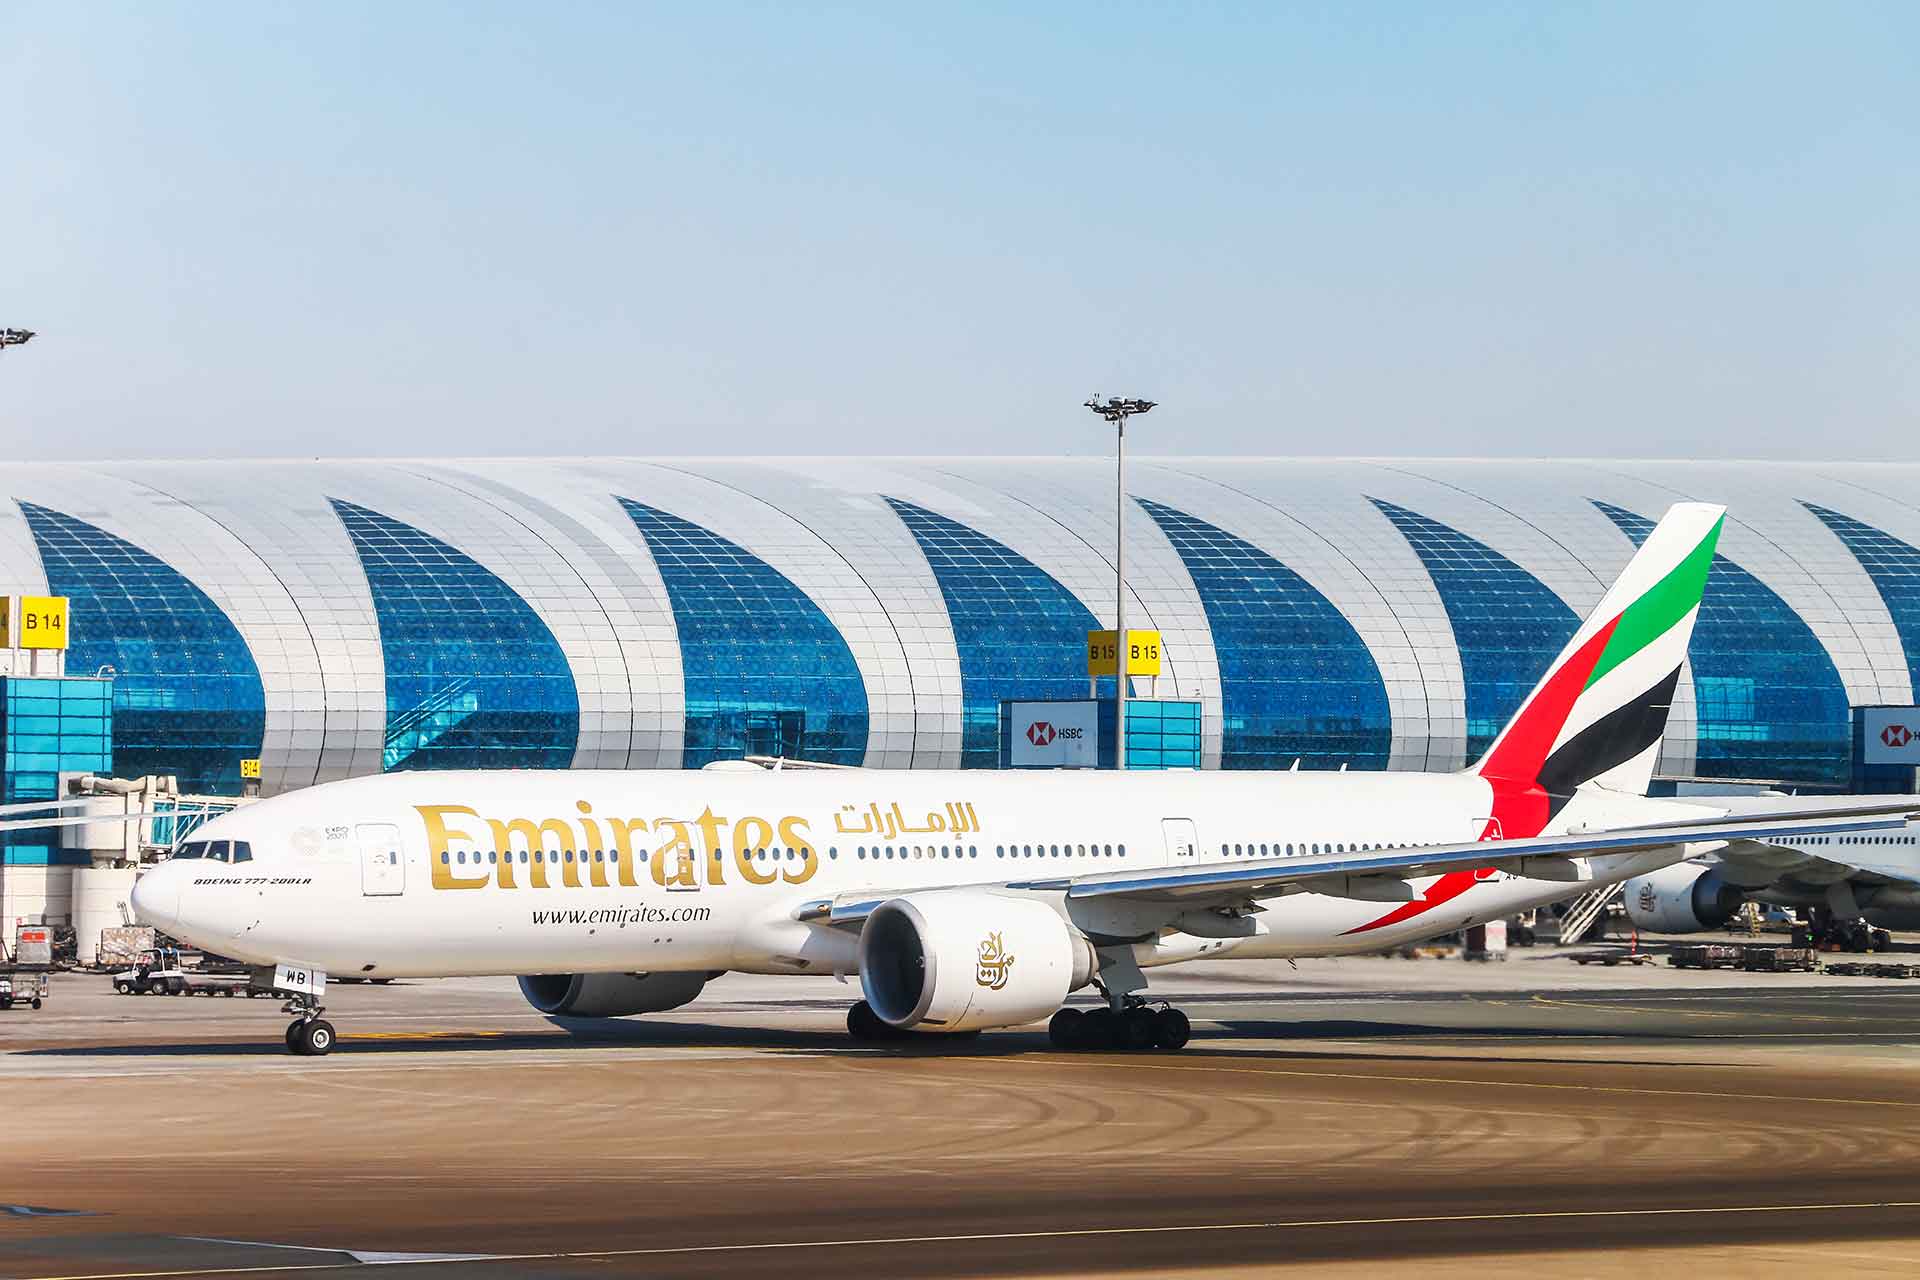 Emirates & Flydubai Img. no: 03